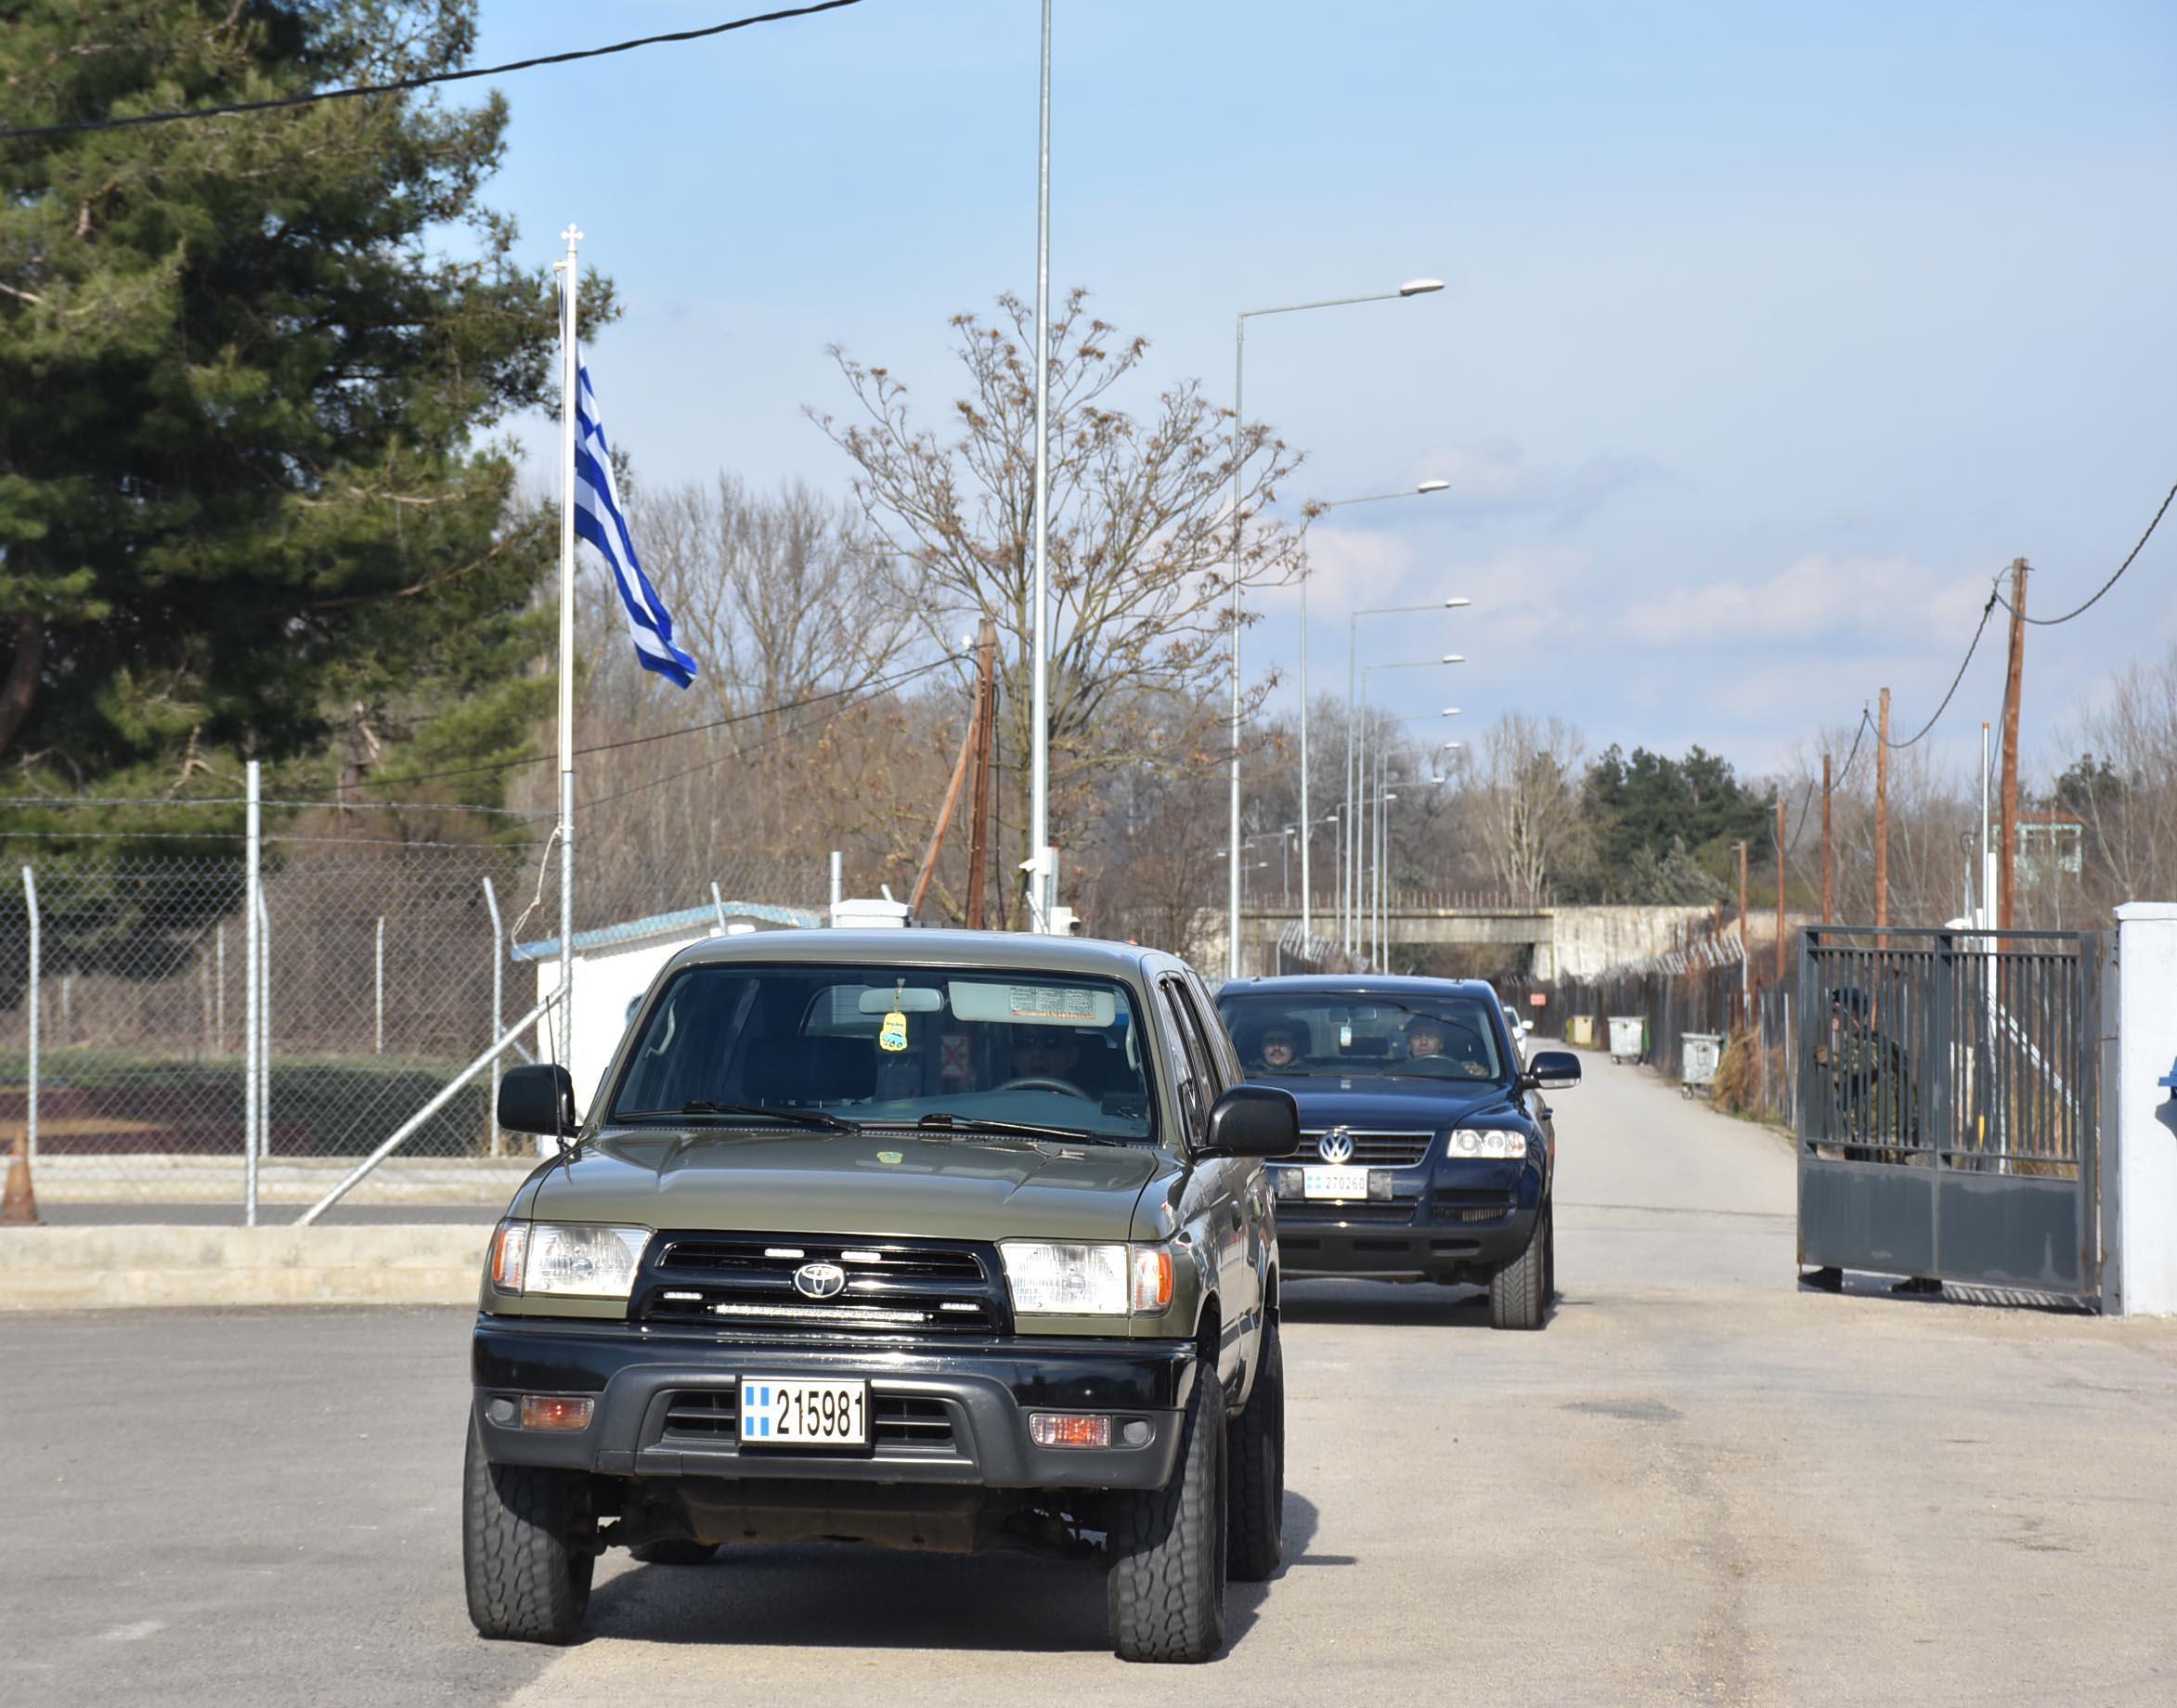 Yunanistan, sınırda önlemleri artırdı: Kamyonla tel örgü taşıyorlar